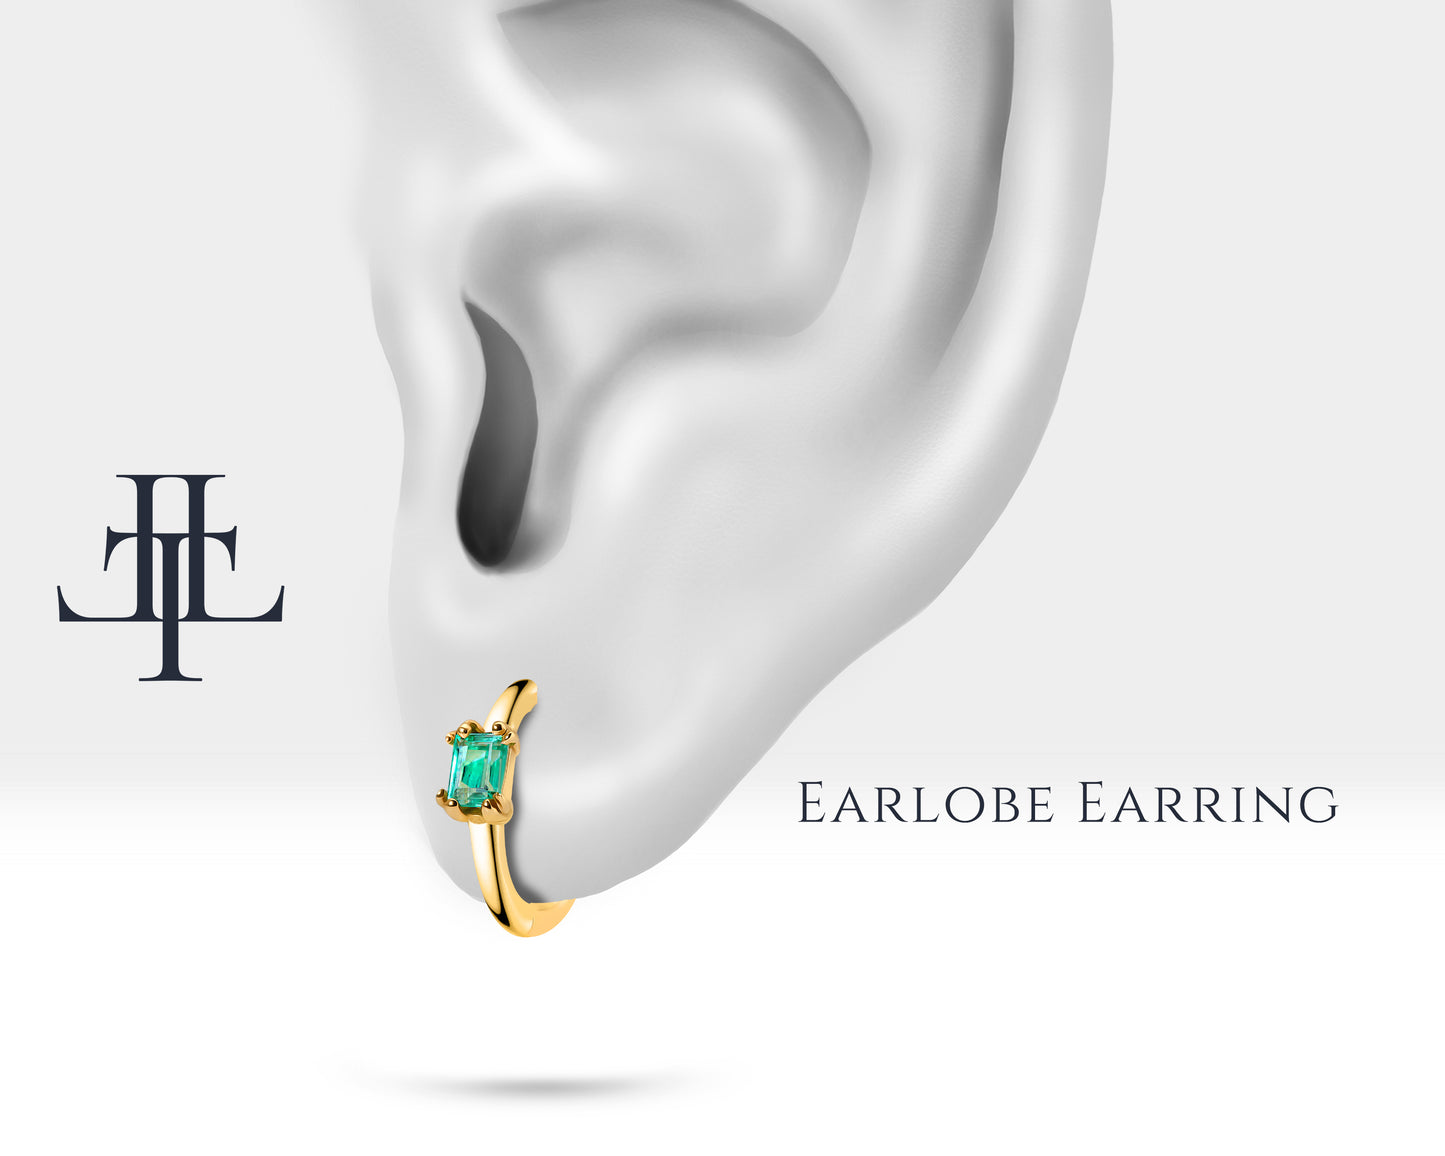 Cartilage Hoop / Baguette Cut Emerald Earring/Single Earring/ 14K